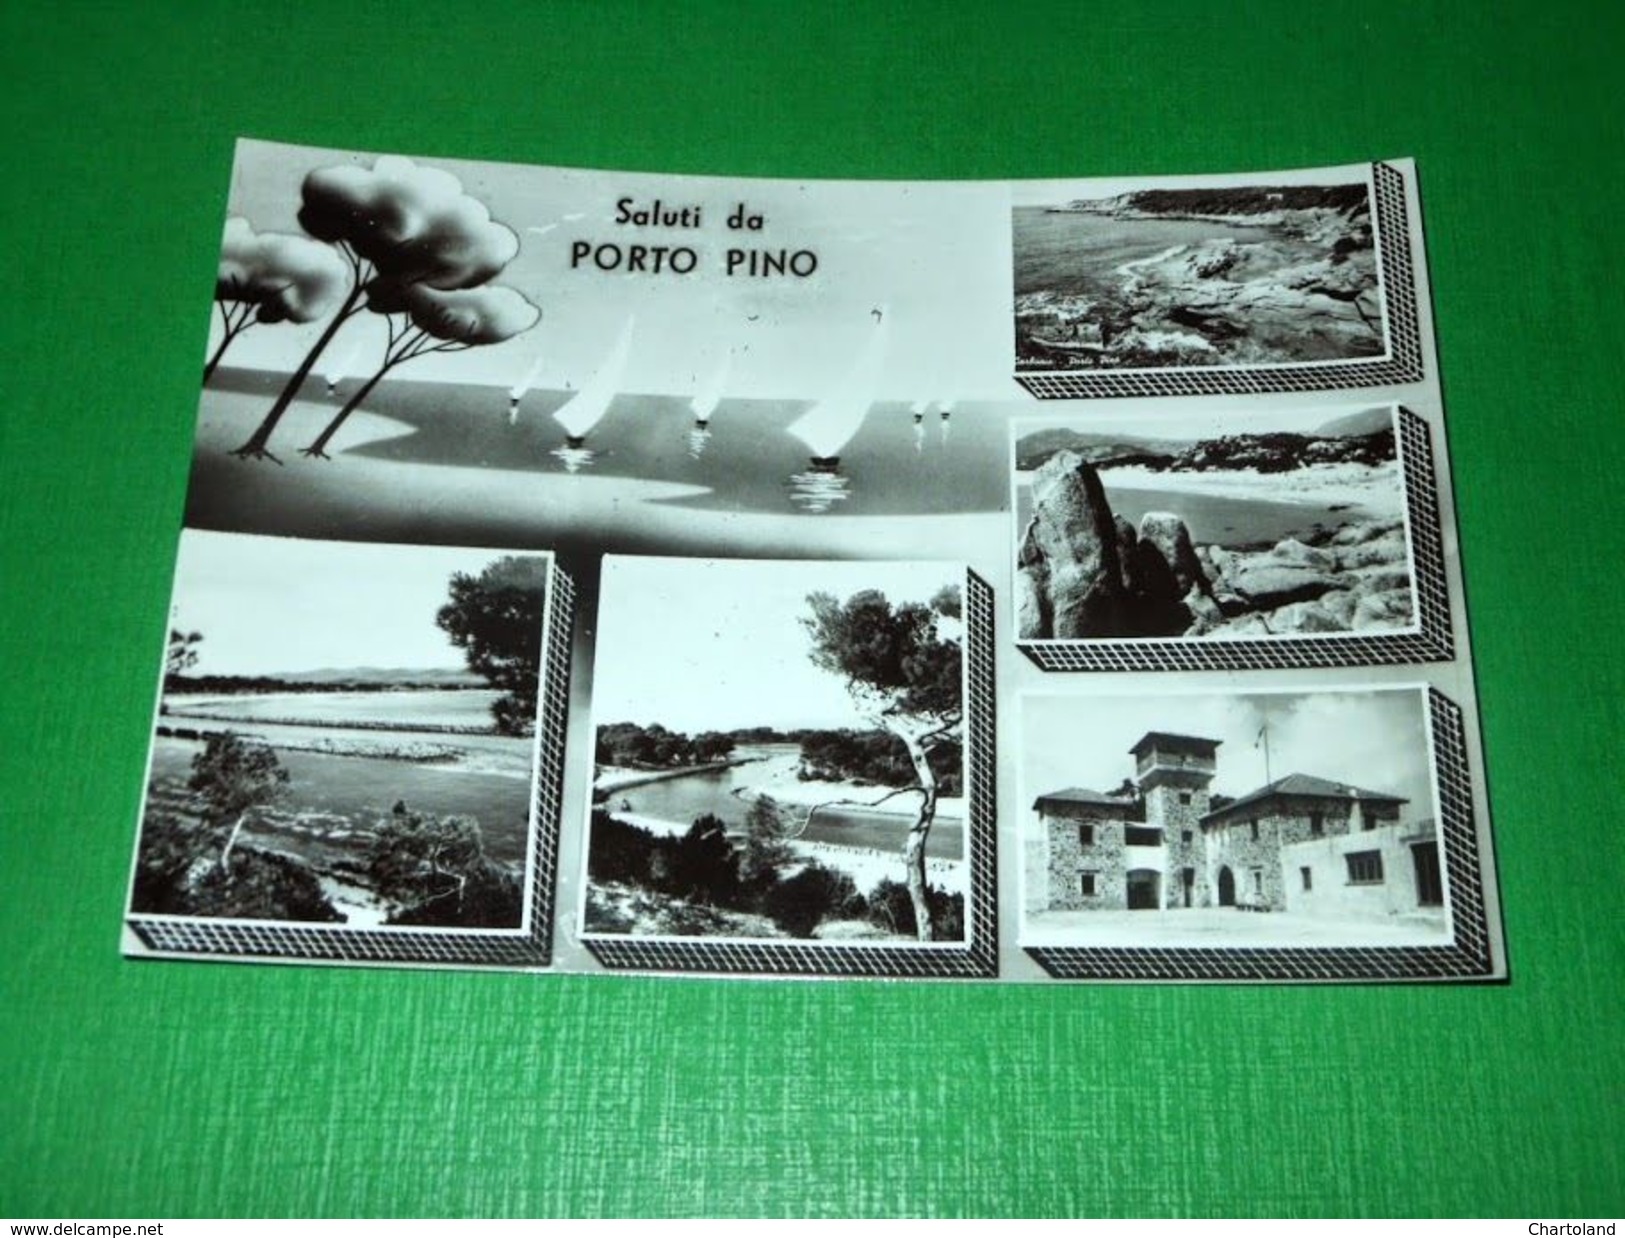 Cartolina Saluti Da Porto Pino - Vedute Diverse 1960 Ca - Cagliari